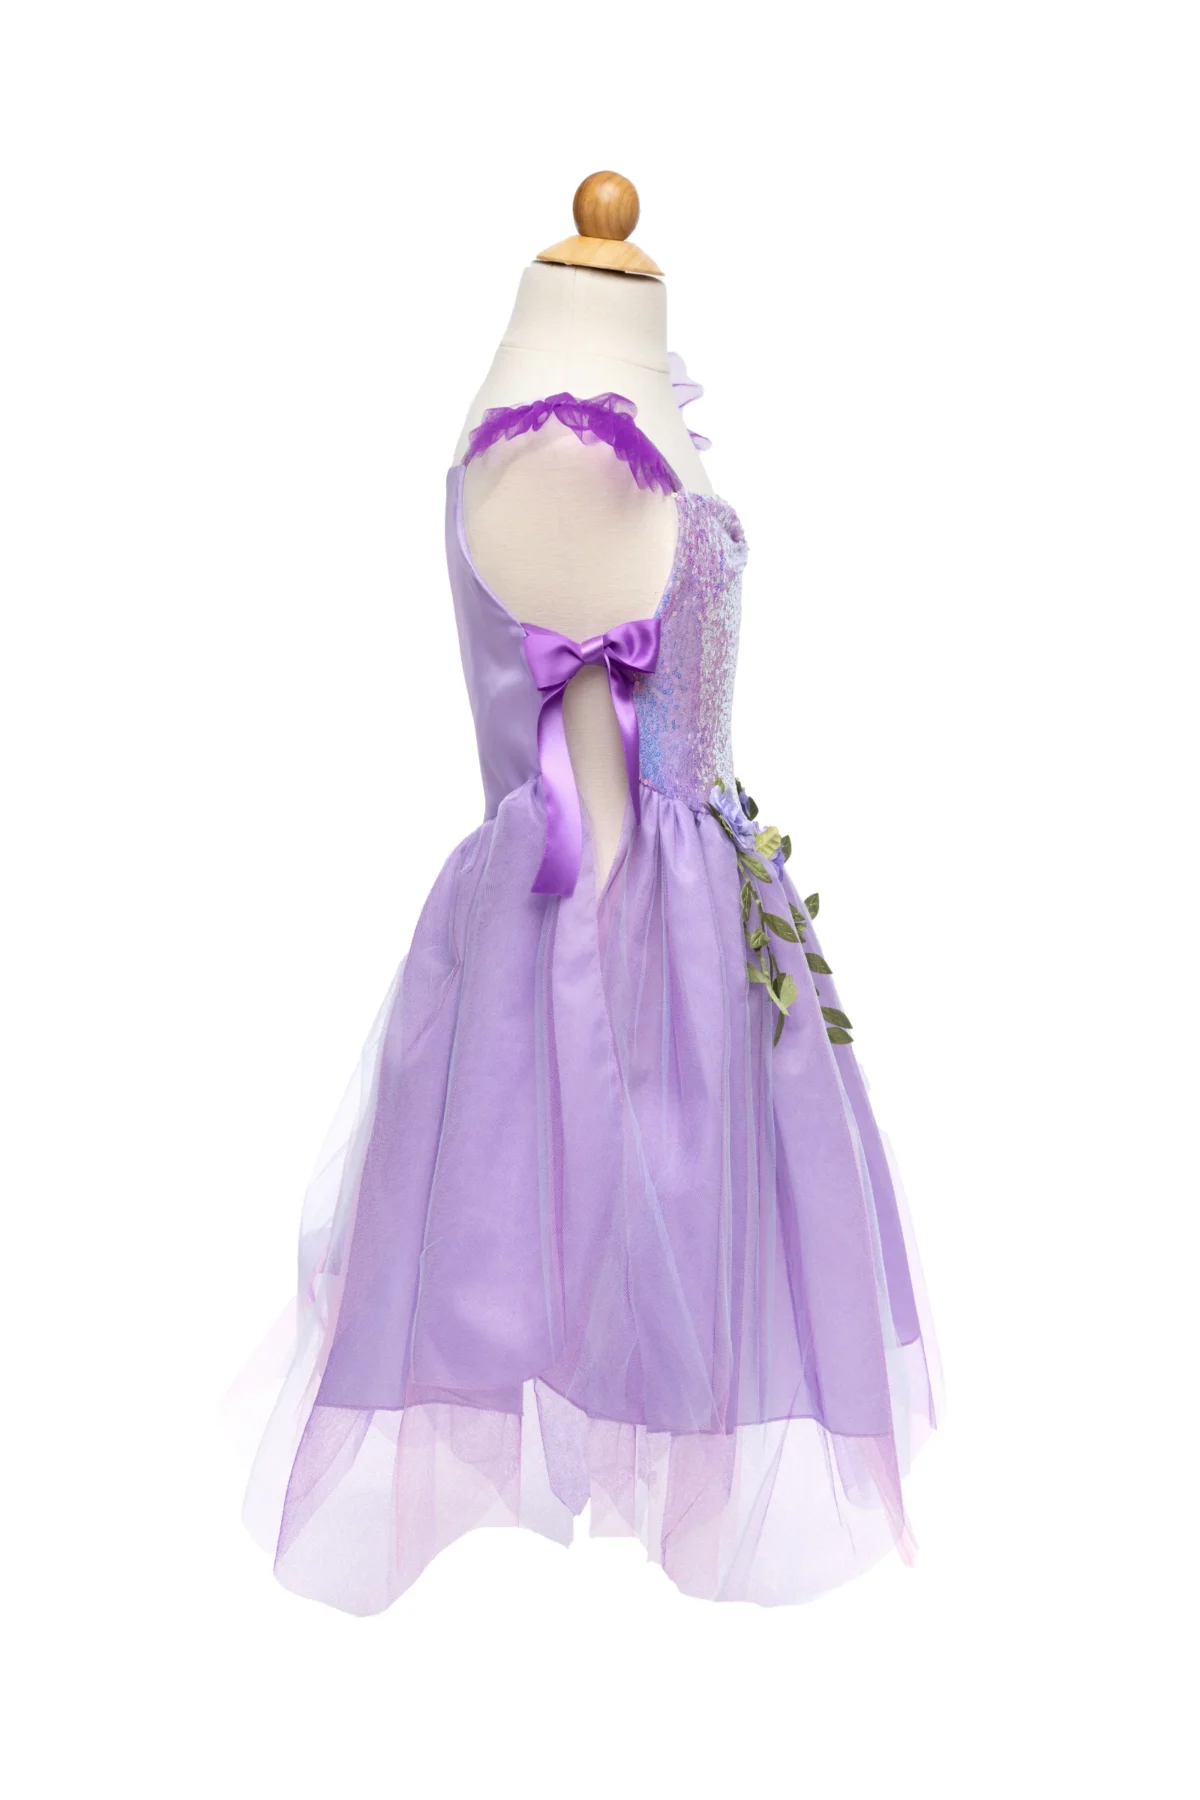 Great Pretenders litritega särav metshaldja kleit, Lilac Great Pretenders kleidid, keebid ja kostüümid - HellyK - Kvaliteetsed lasteriided, villariided, barefoot jalatsid